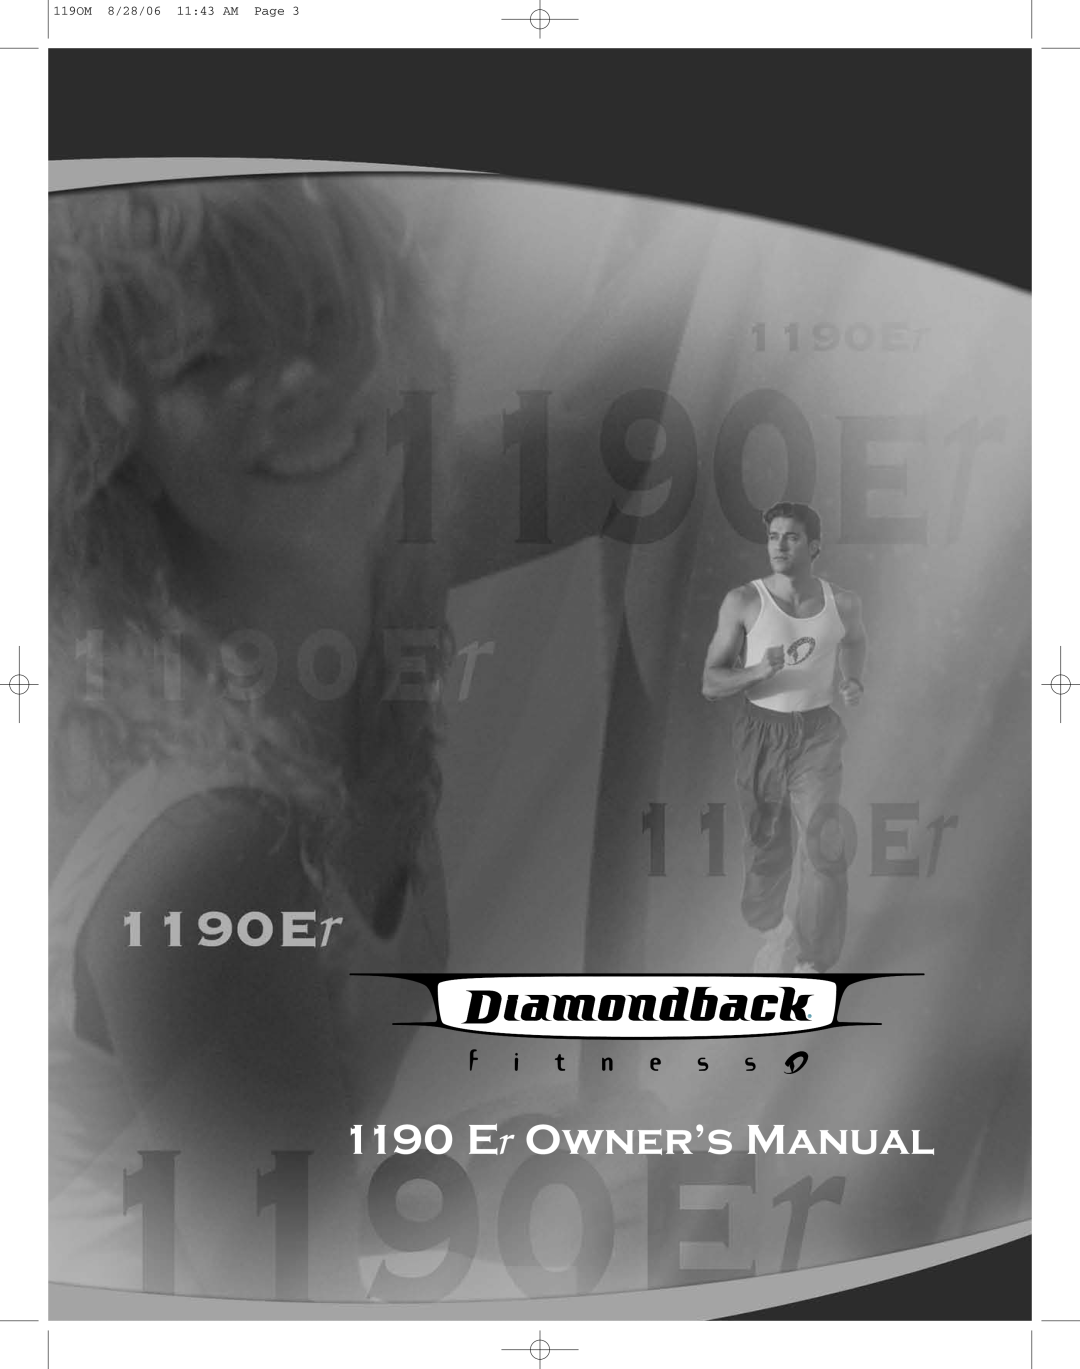 Diamondback 1190 Er manual Er Owner’s Manual, 119OM 8/28/06 1143 AM Page 